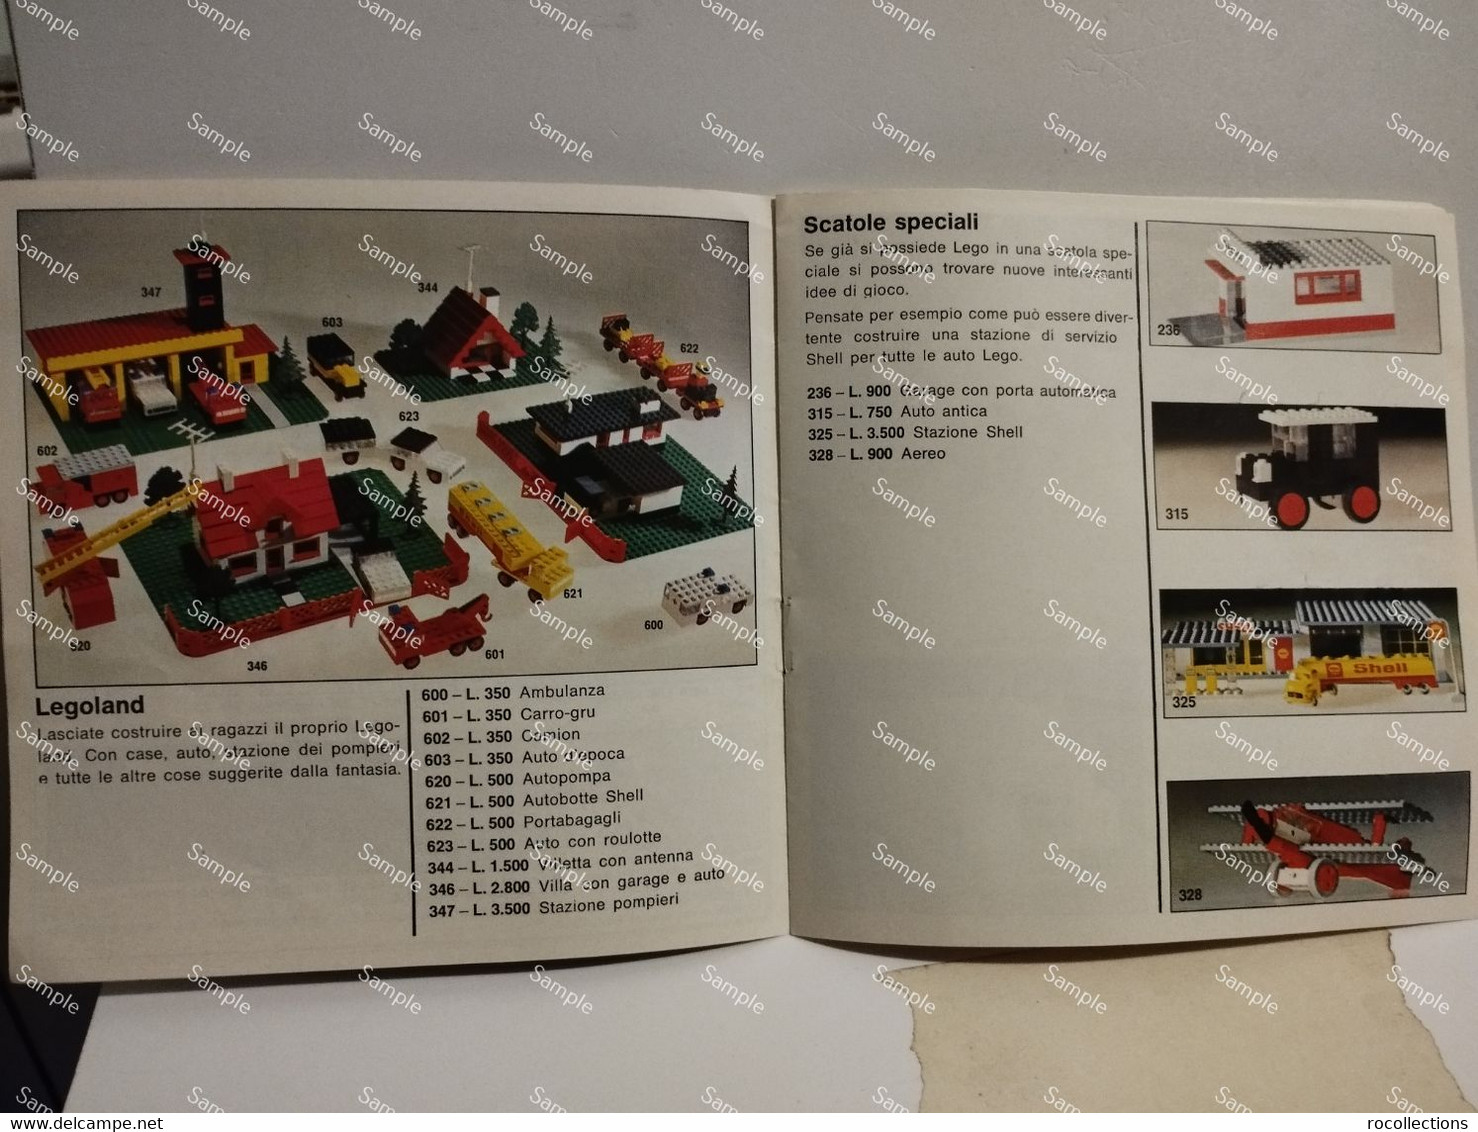 Italy Italia LEGO Little Catalog ASSORTIMENTO LEGO CON TUTTE LE NOVITA' DELL'ANNO. Printed In Germany - Kataloge